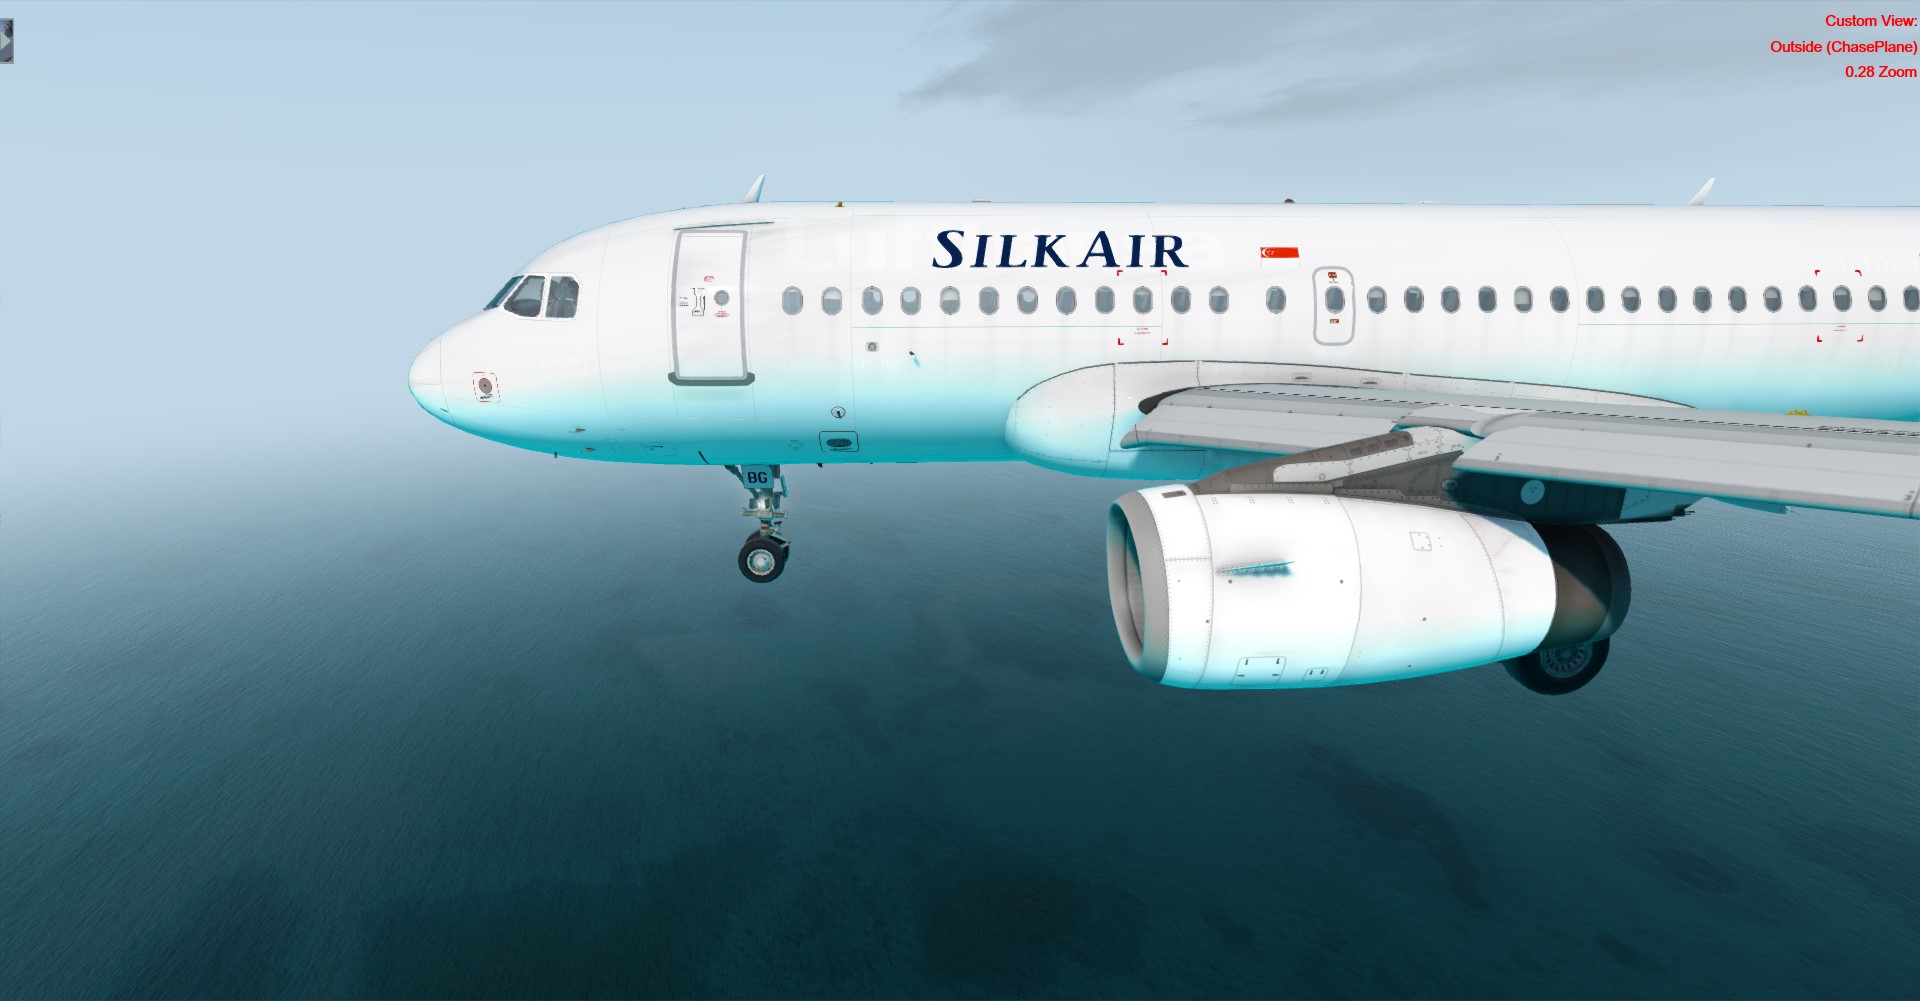 Silk Air WSSS-VTSM(Koh Samui)-2717 